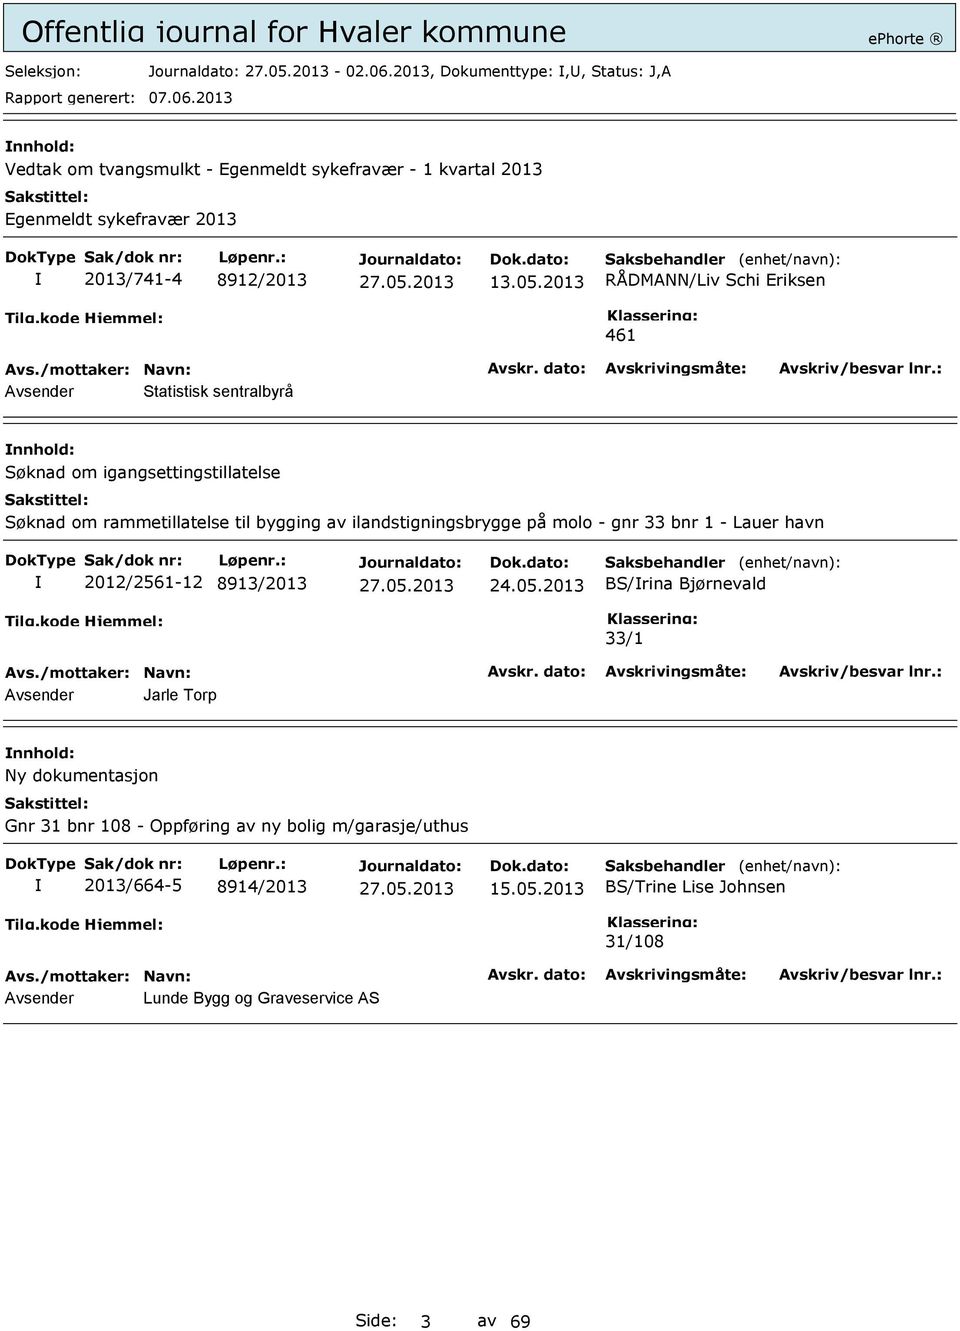 ilandstigningsbrygge på molo - gnr 33 bnr 1 - Lauer havn 2012/2561-12 8913/2013 24.05.